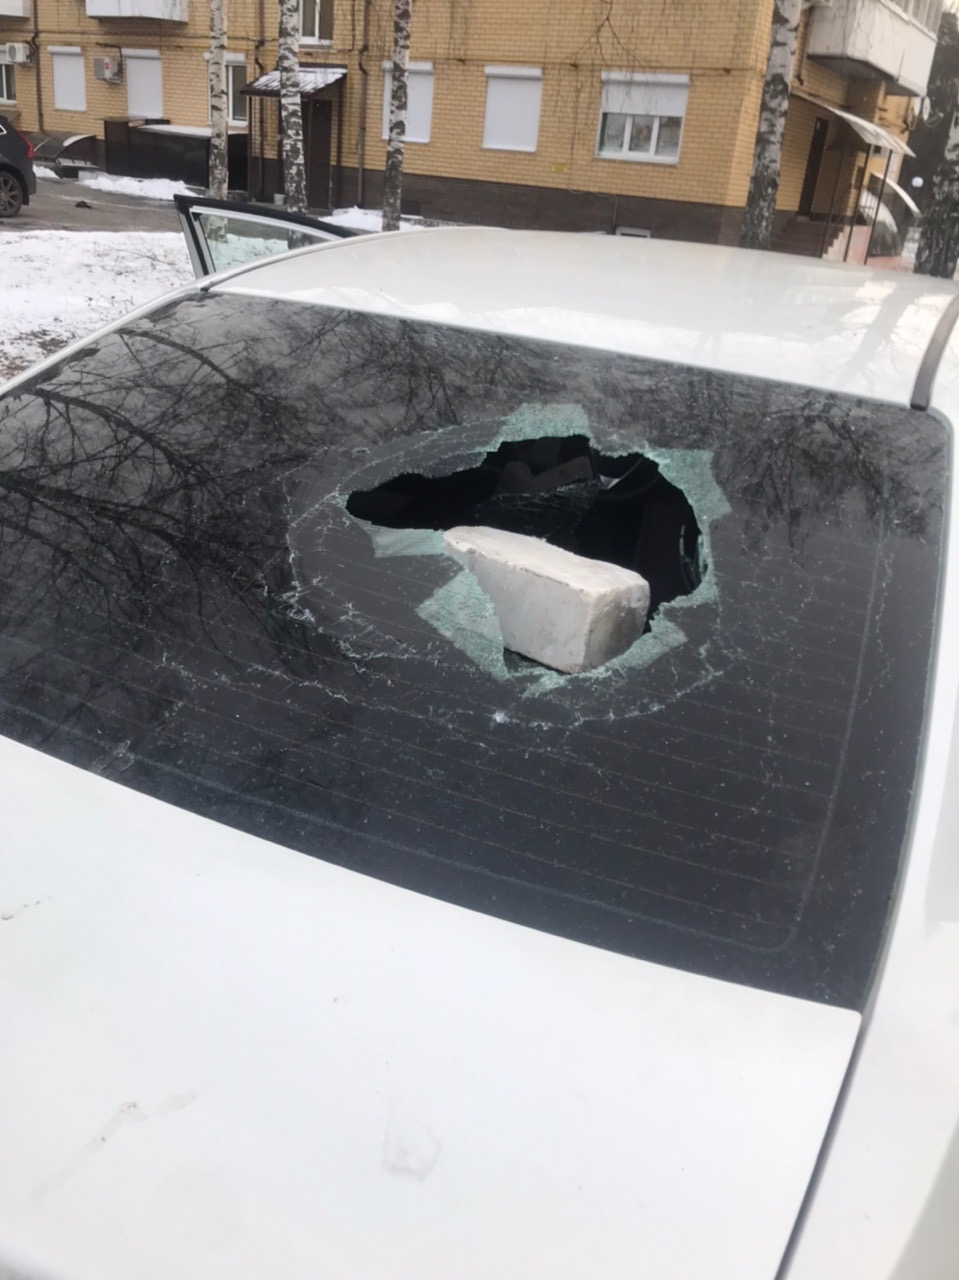 Это уже система: дзержинец обнаружил сюрприз на лобовом стекле своего авто